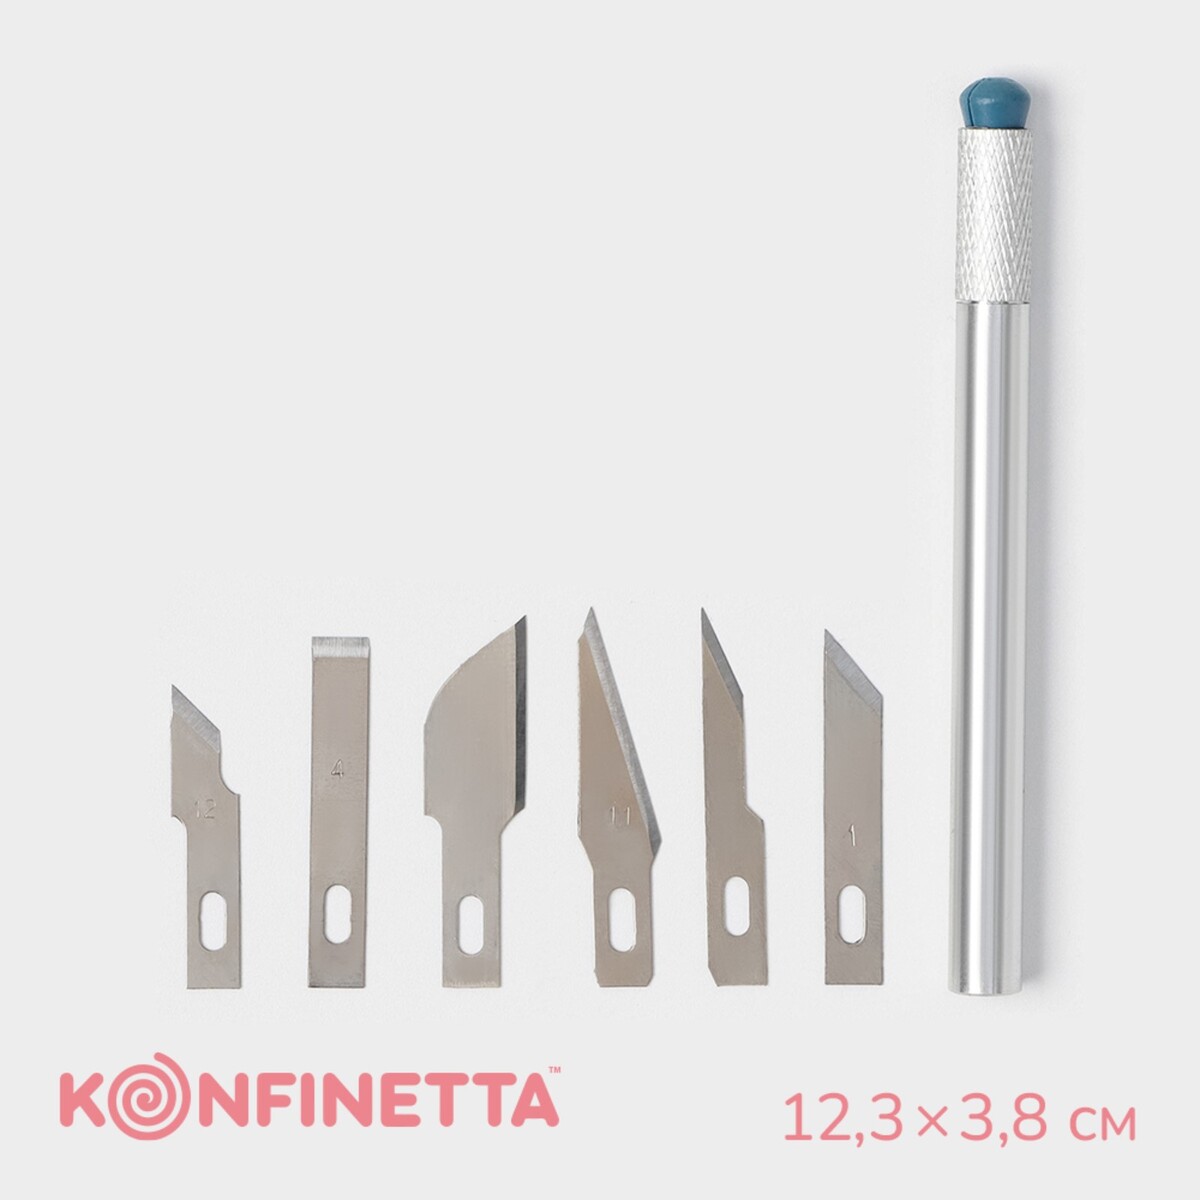 Набор кондитерских инструментов для моделирования konfinetta, 7 предметов, нержавеющая сталь набор слесарных инструментов низ 2 2761 20 6 гранные сталь кейс 16 предметов